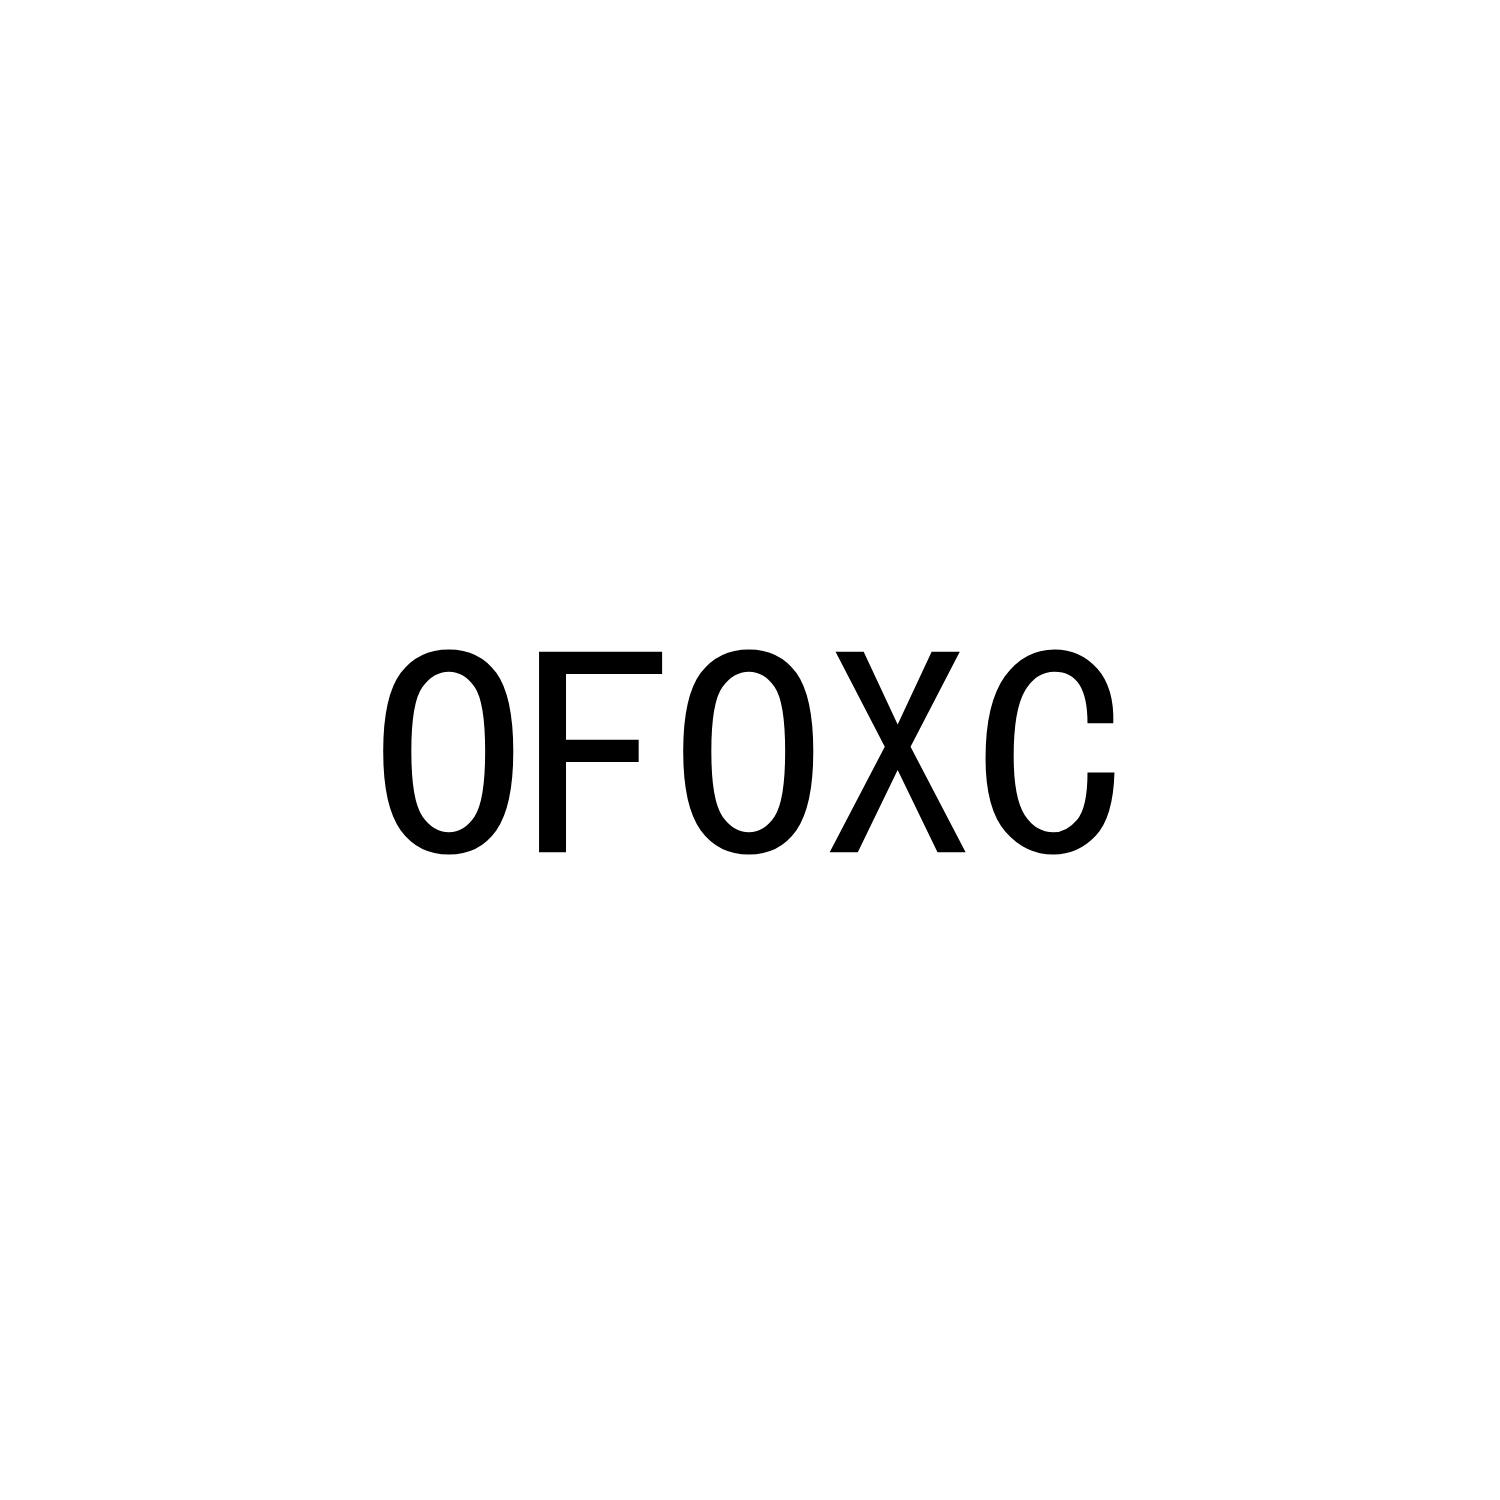 OFOXC